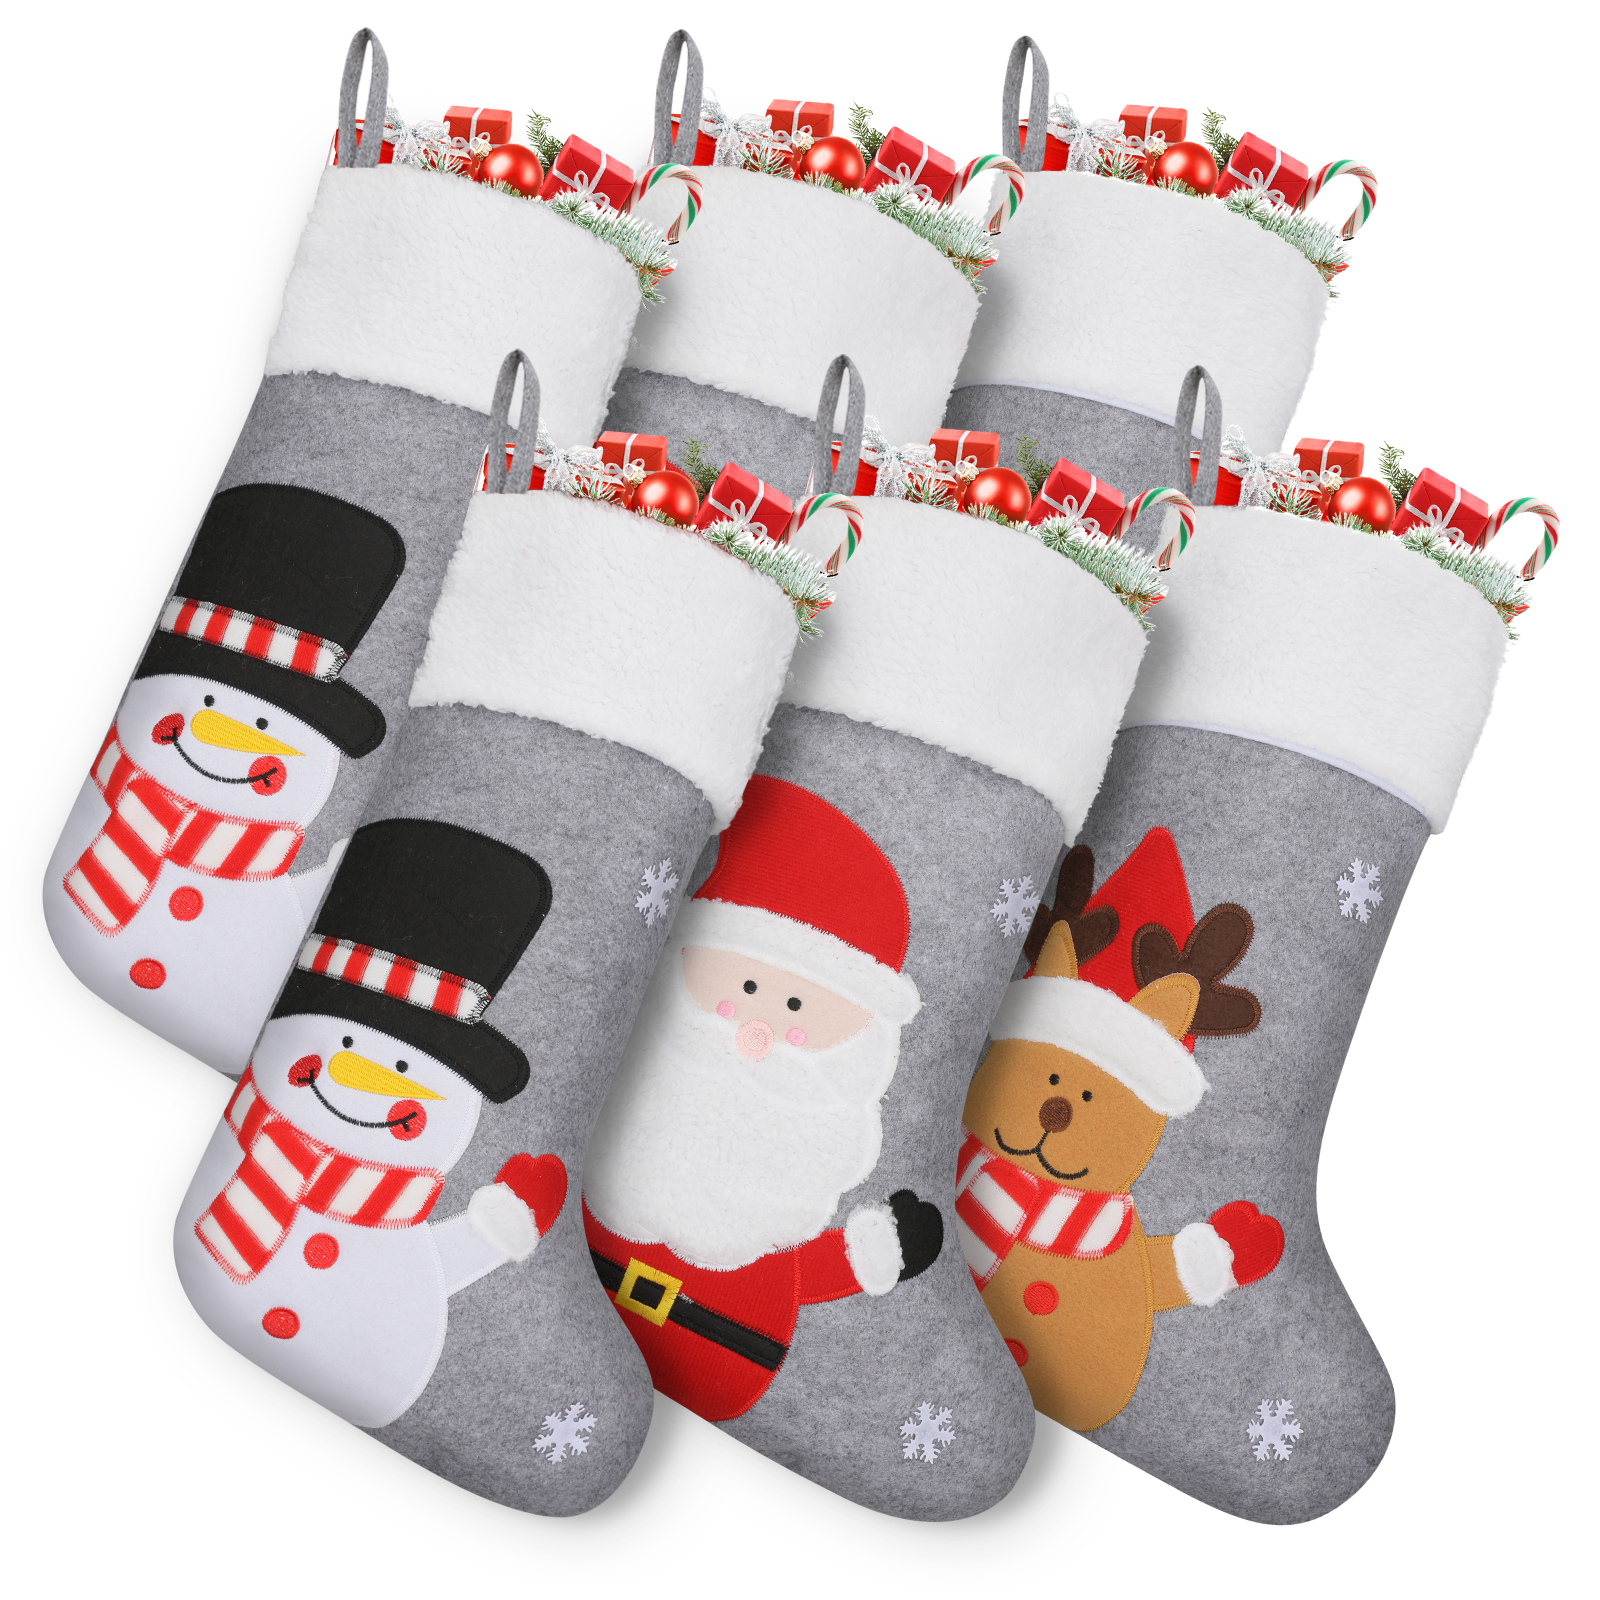 needlepoint christmas stocking kit 